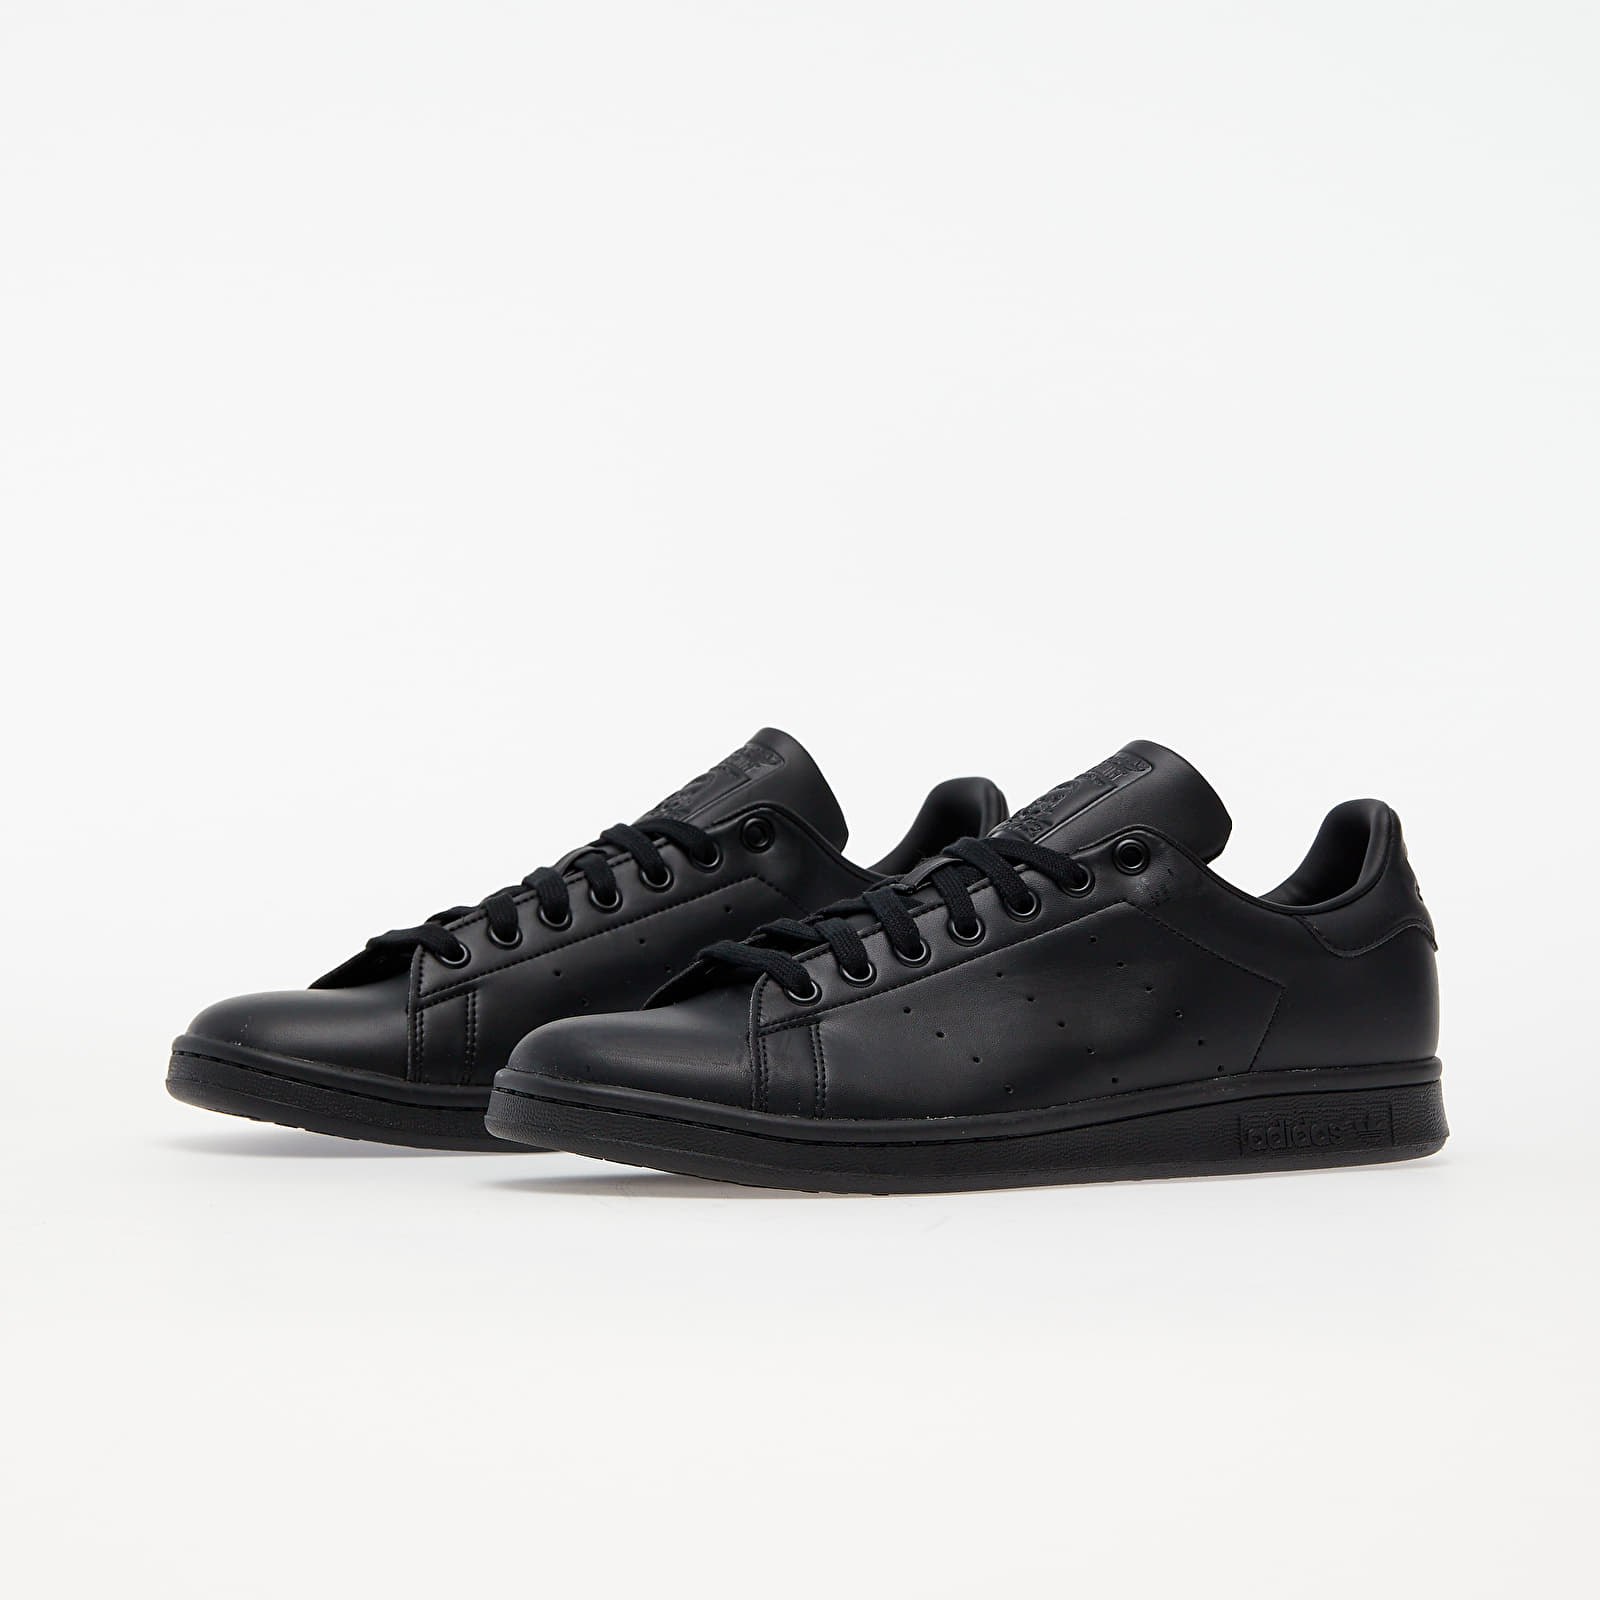 Chaussures et baskets homme adidas Stan Smith Core Black/ Core Black/ Ftw  White | Footshop